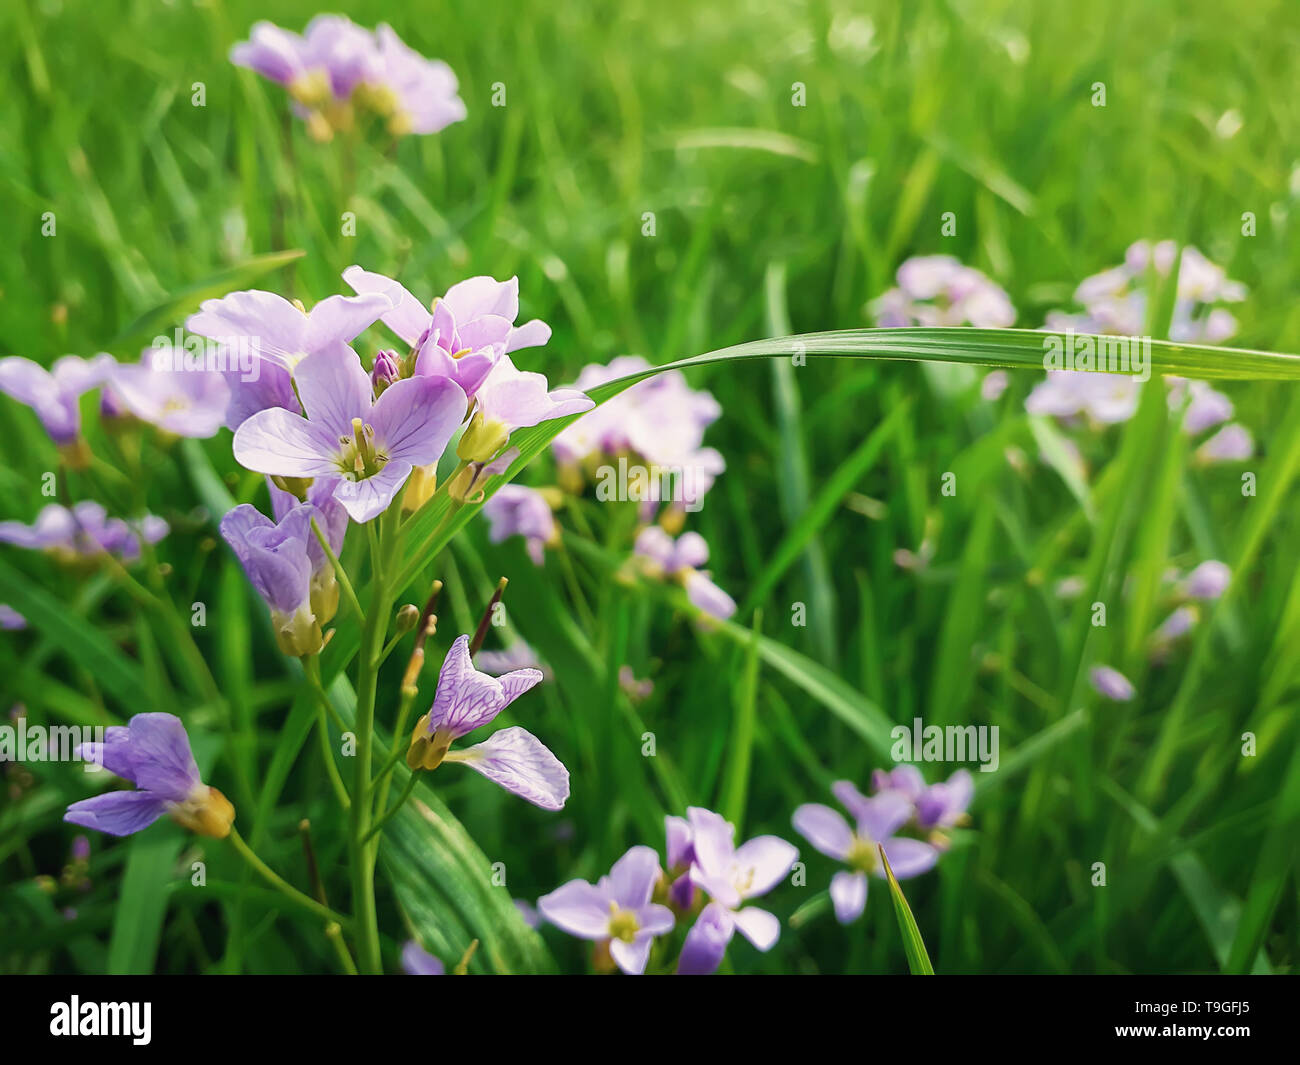 In der Nähe von wilden Frühling Blumenwiese. Zusammensetzung der Natur, Grün und Lila garss Blütenblätter. Stockfoto